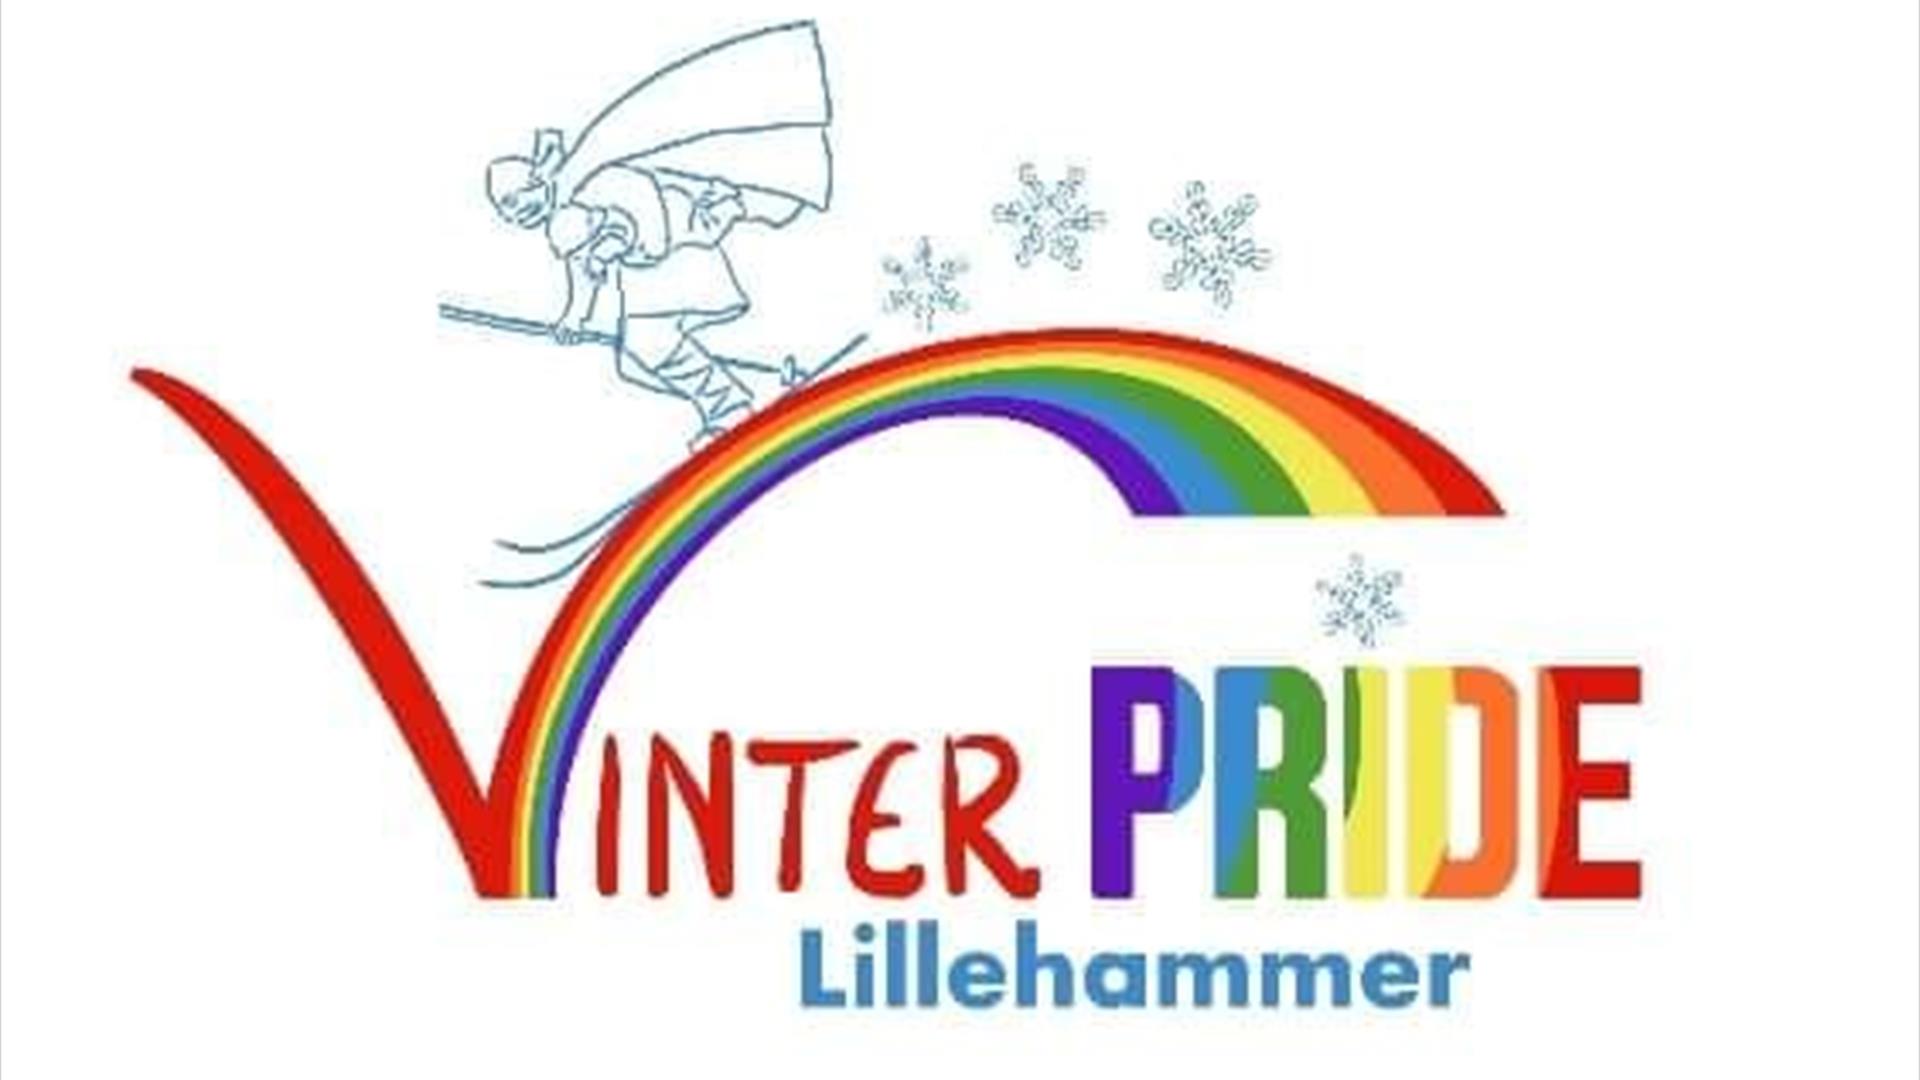 Vinterpride Lillehammer